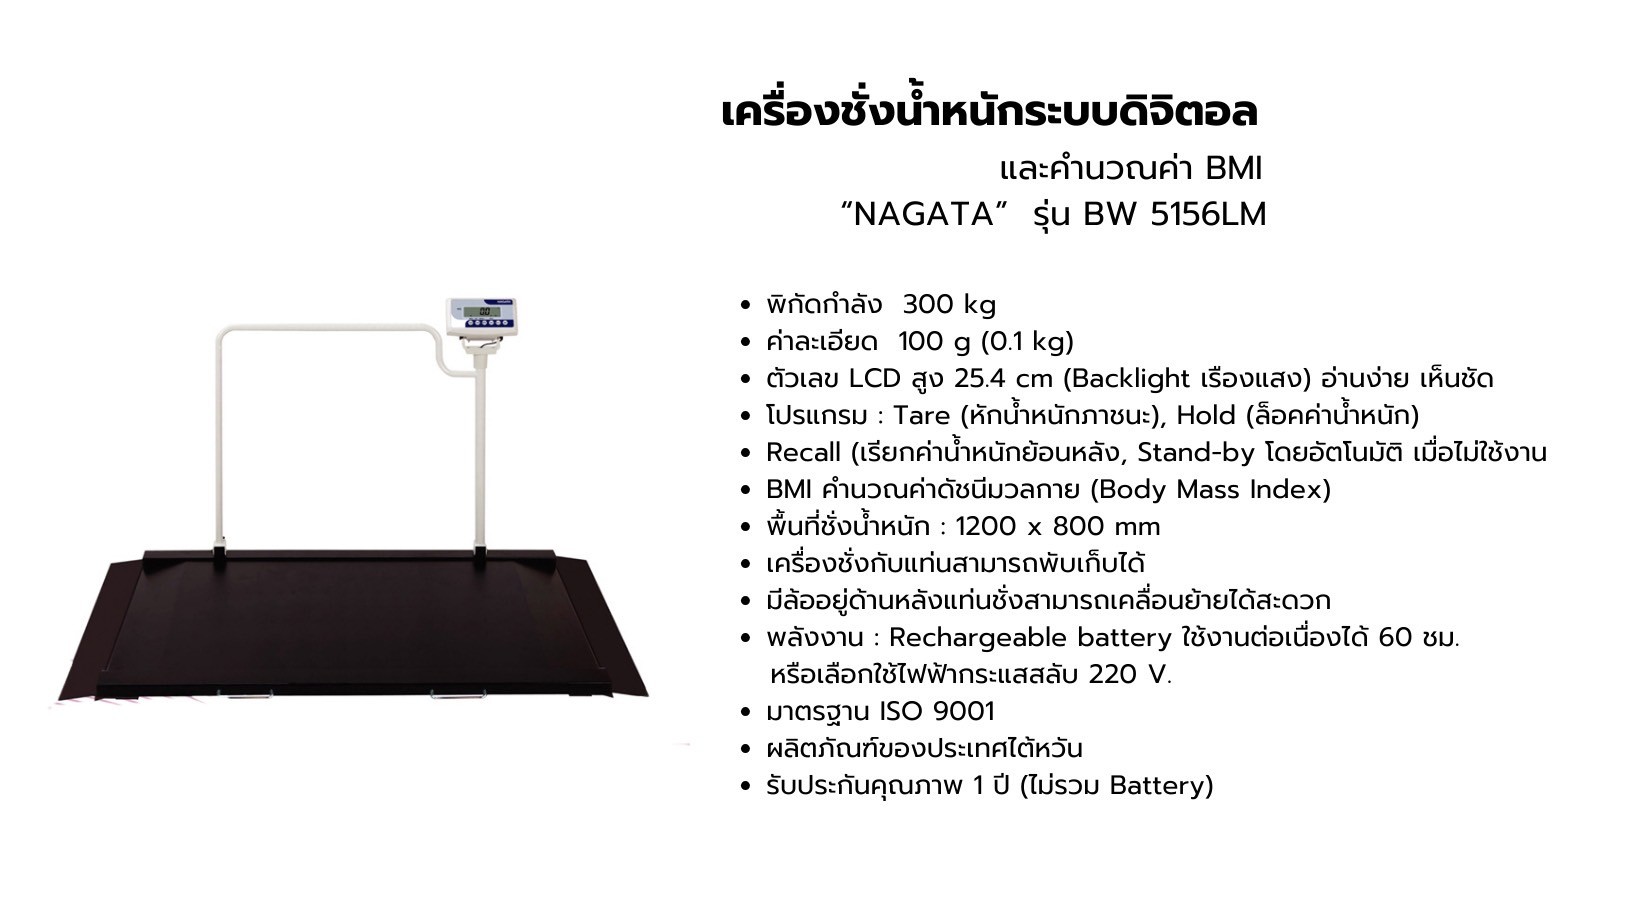 เครื่องชั่งน้ำหนักระบบดิจิตอล และคำนวณค่า BMI NAGATA รุ่น BW 5156LM